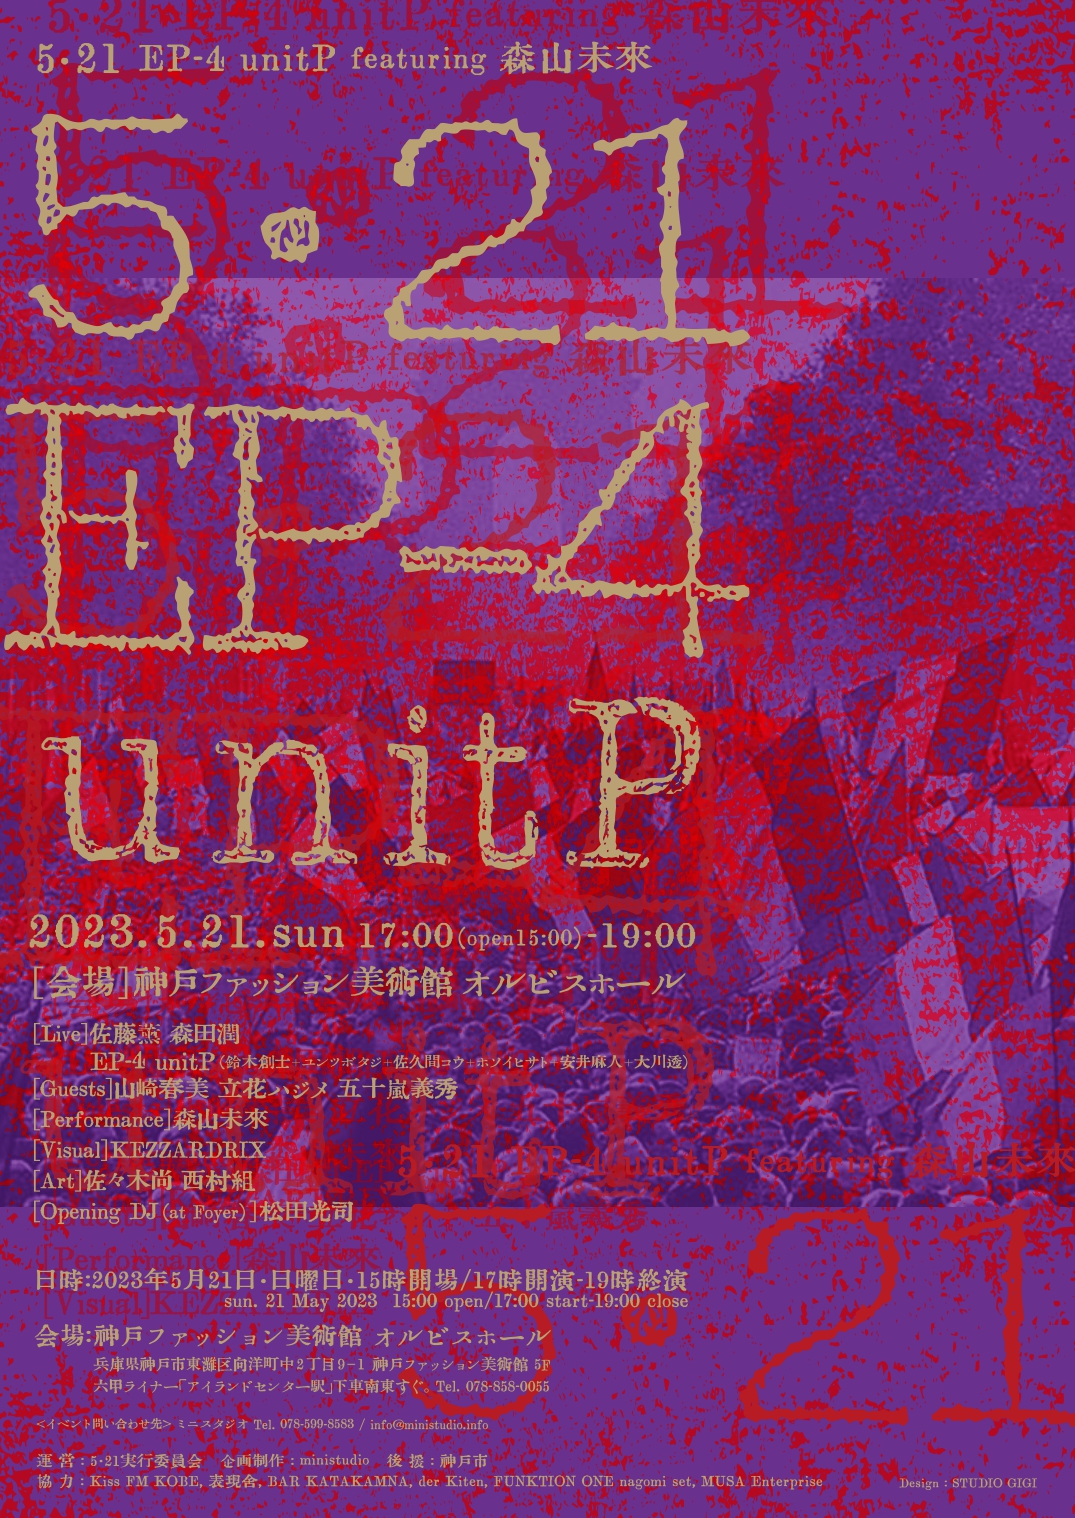 【オルビスホール情報】5/21(日)「5・21　EP-4 unitP」開催のお知らせ